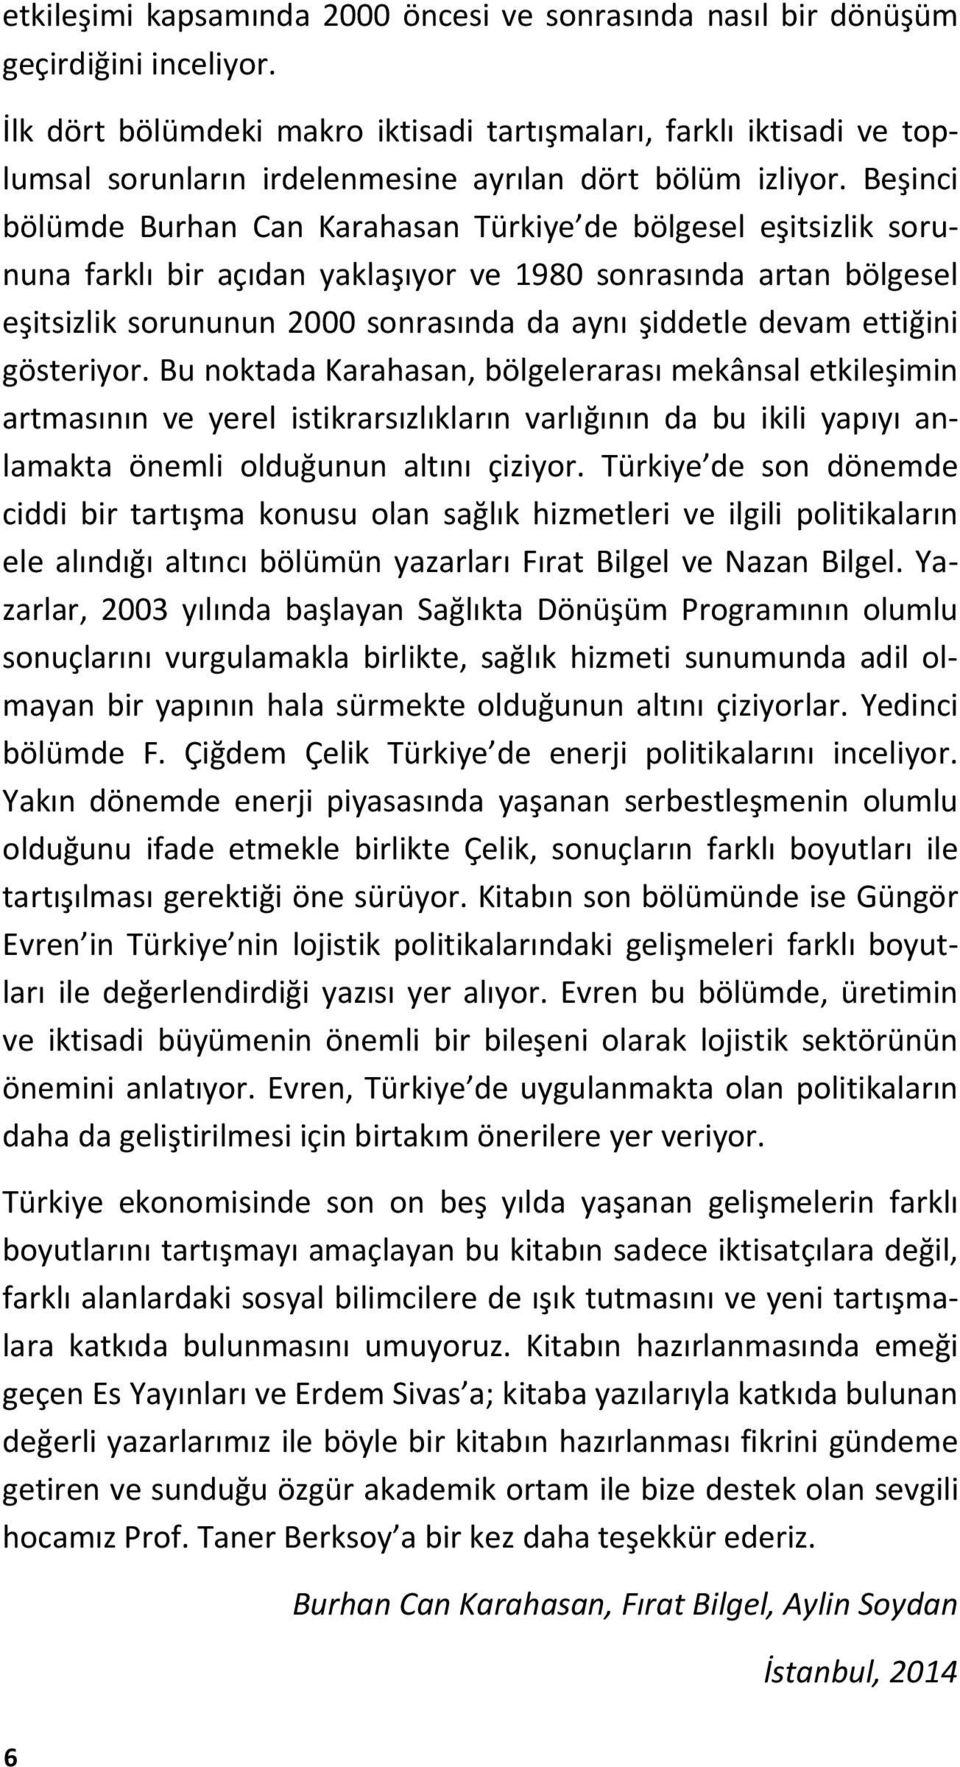 Beşinci bölümde Burhan Can Karahasan Türkiye de bölgesel eşitsizlik sorununa farklı bir açıdan yaklaşıyor ve 1980 sonrasında artan bölgesel eşitsizlik sorununun 2000 sonrasında da aynı şiddetle devam